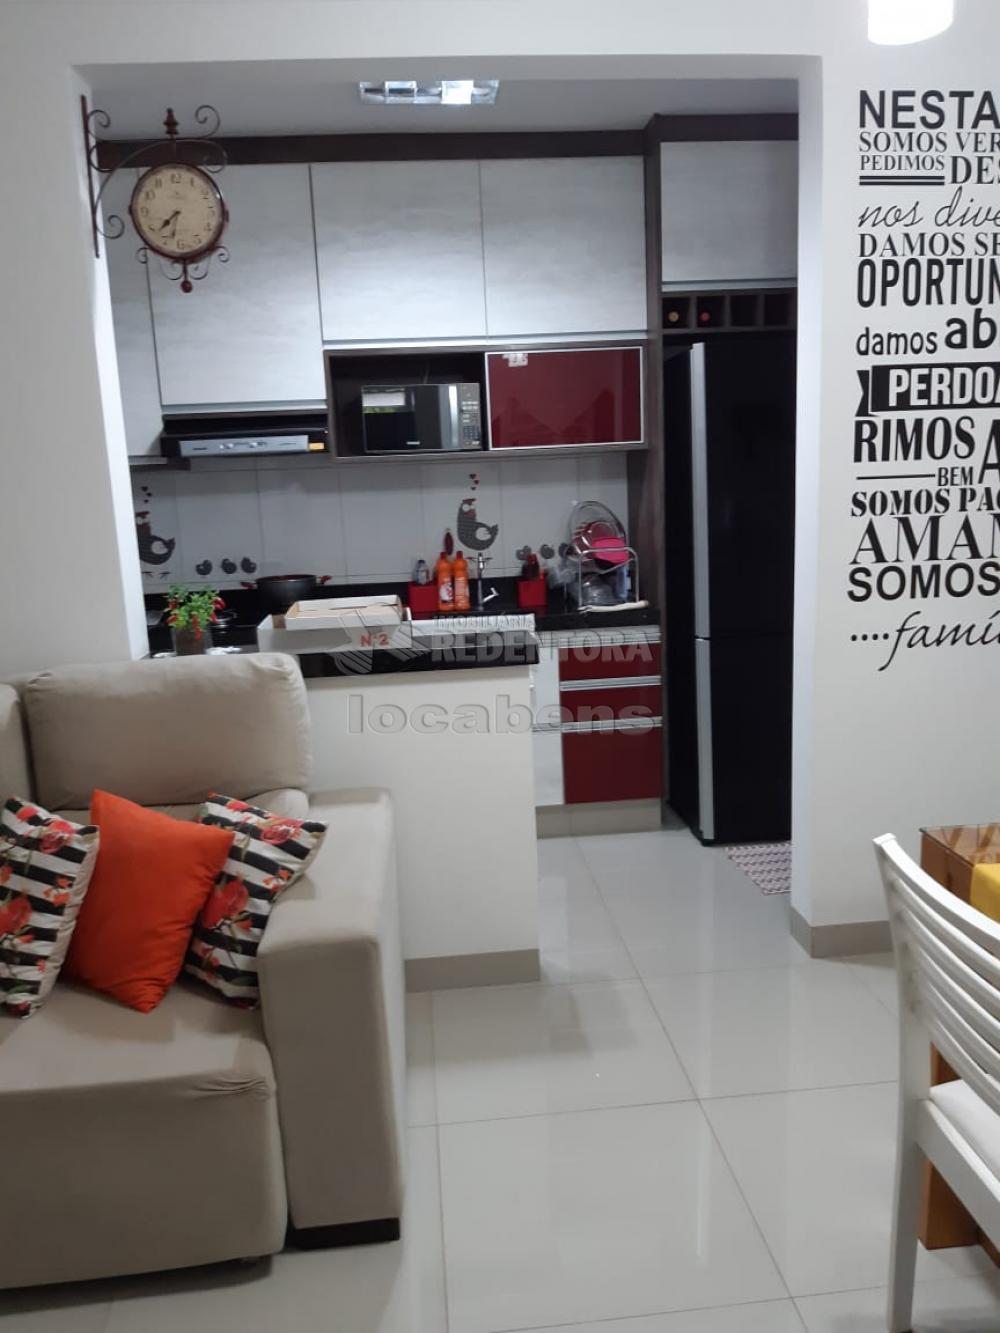 Comprar Apartamento / Padrão em São José do Rio Preto apenas R$ 240.000,00 - Foto 21